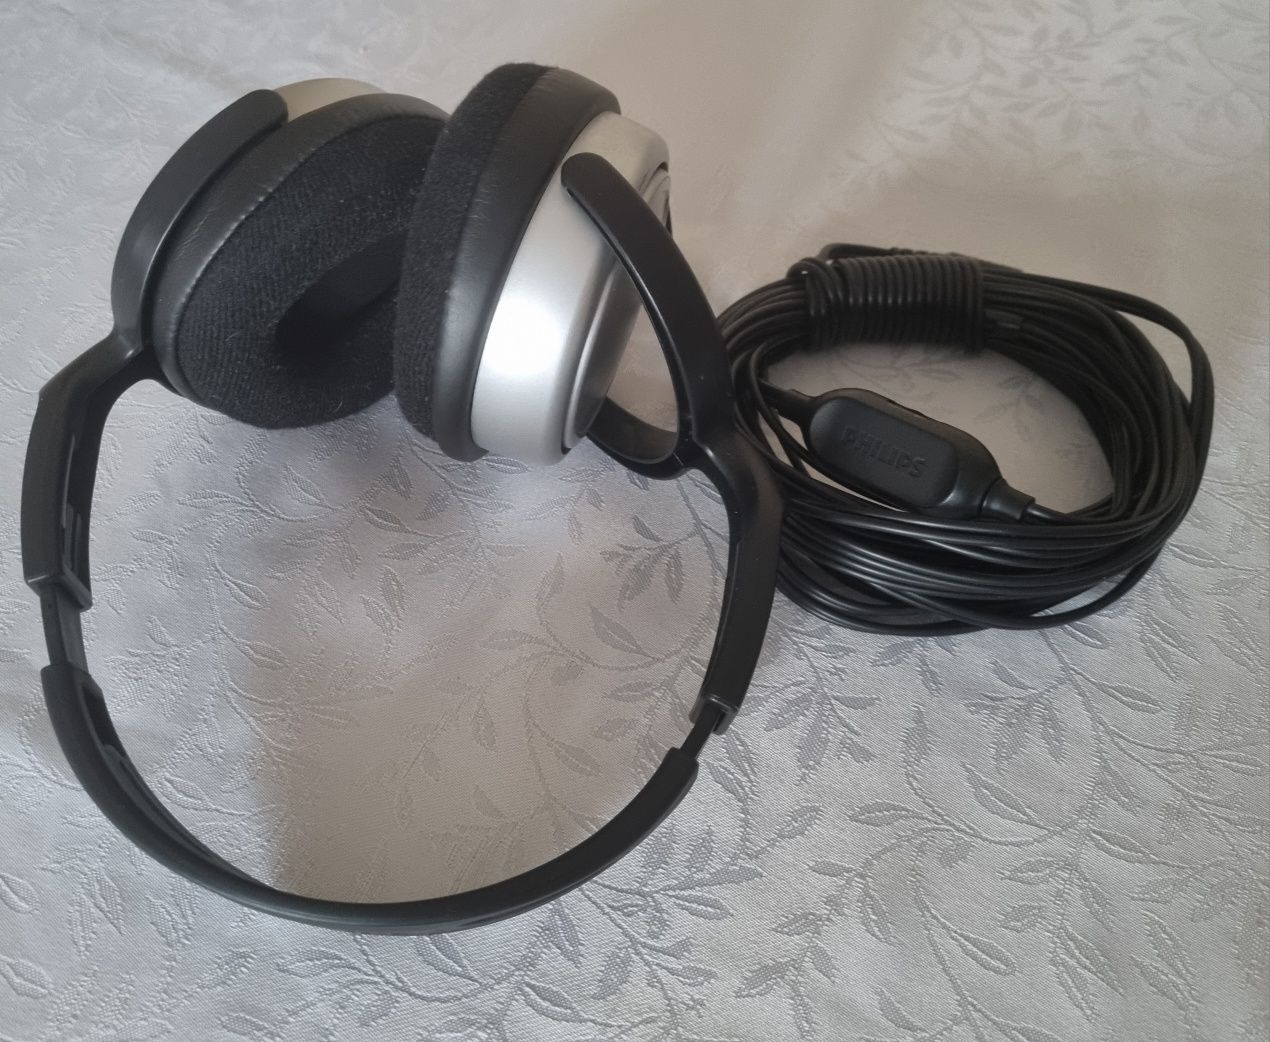 Słuchawki nauszne Philips SHP2500